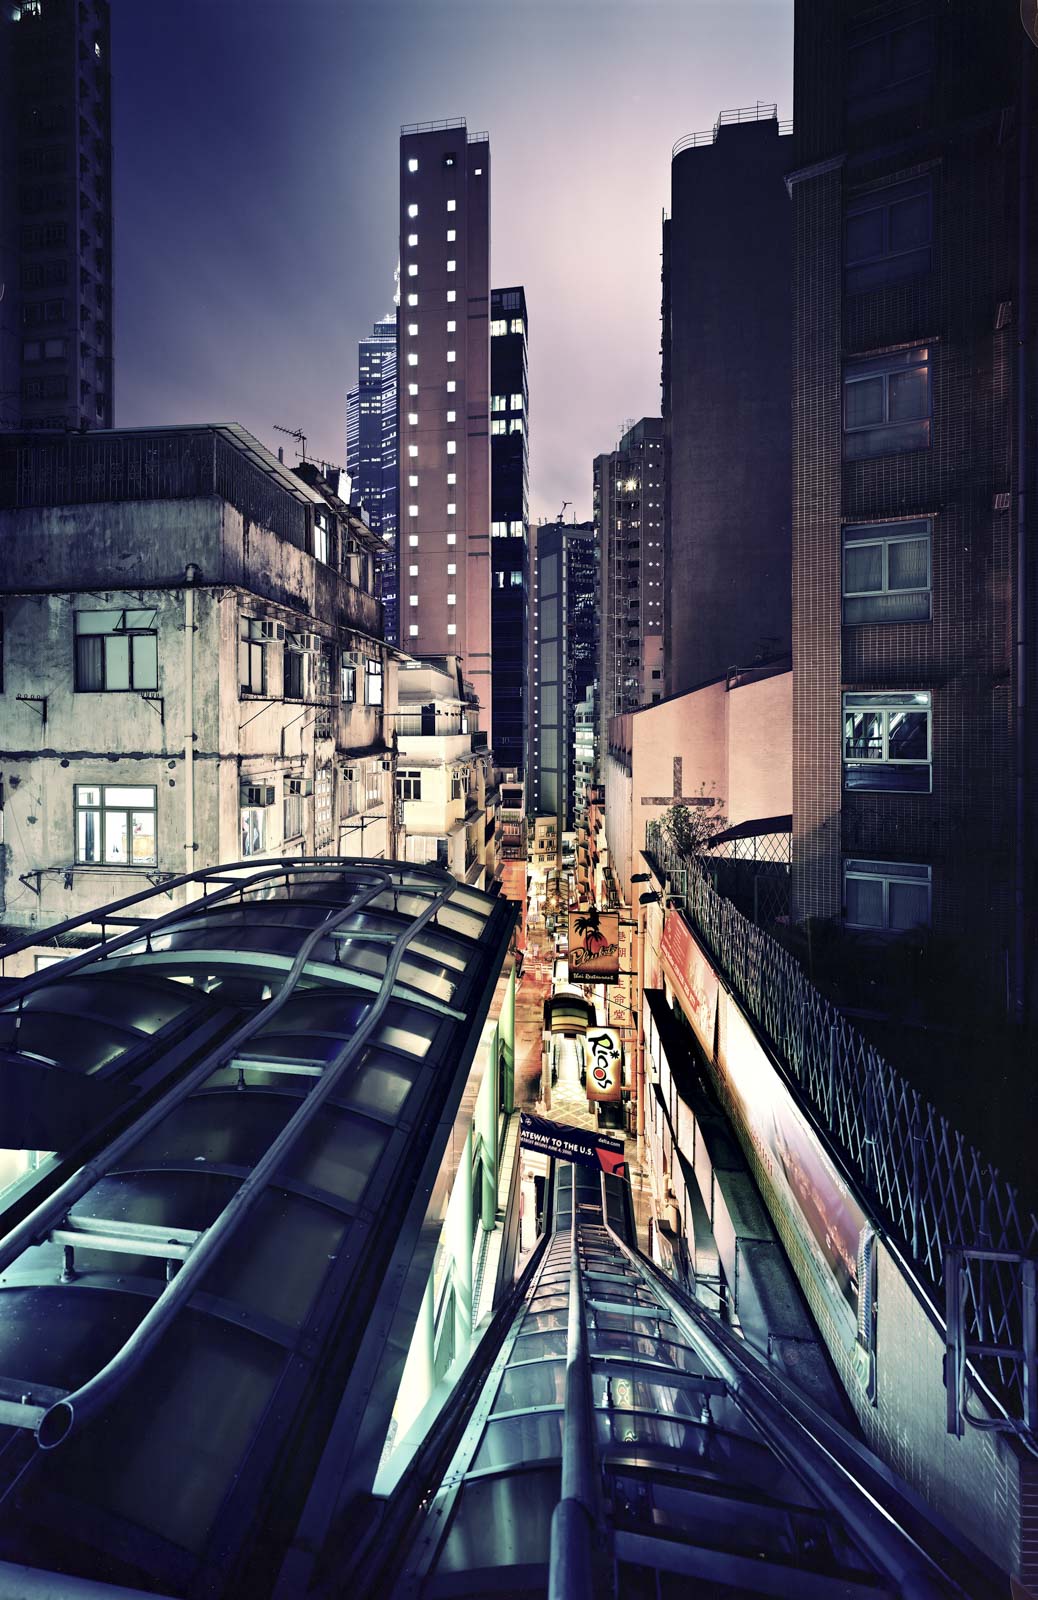 Hong Kong escalator